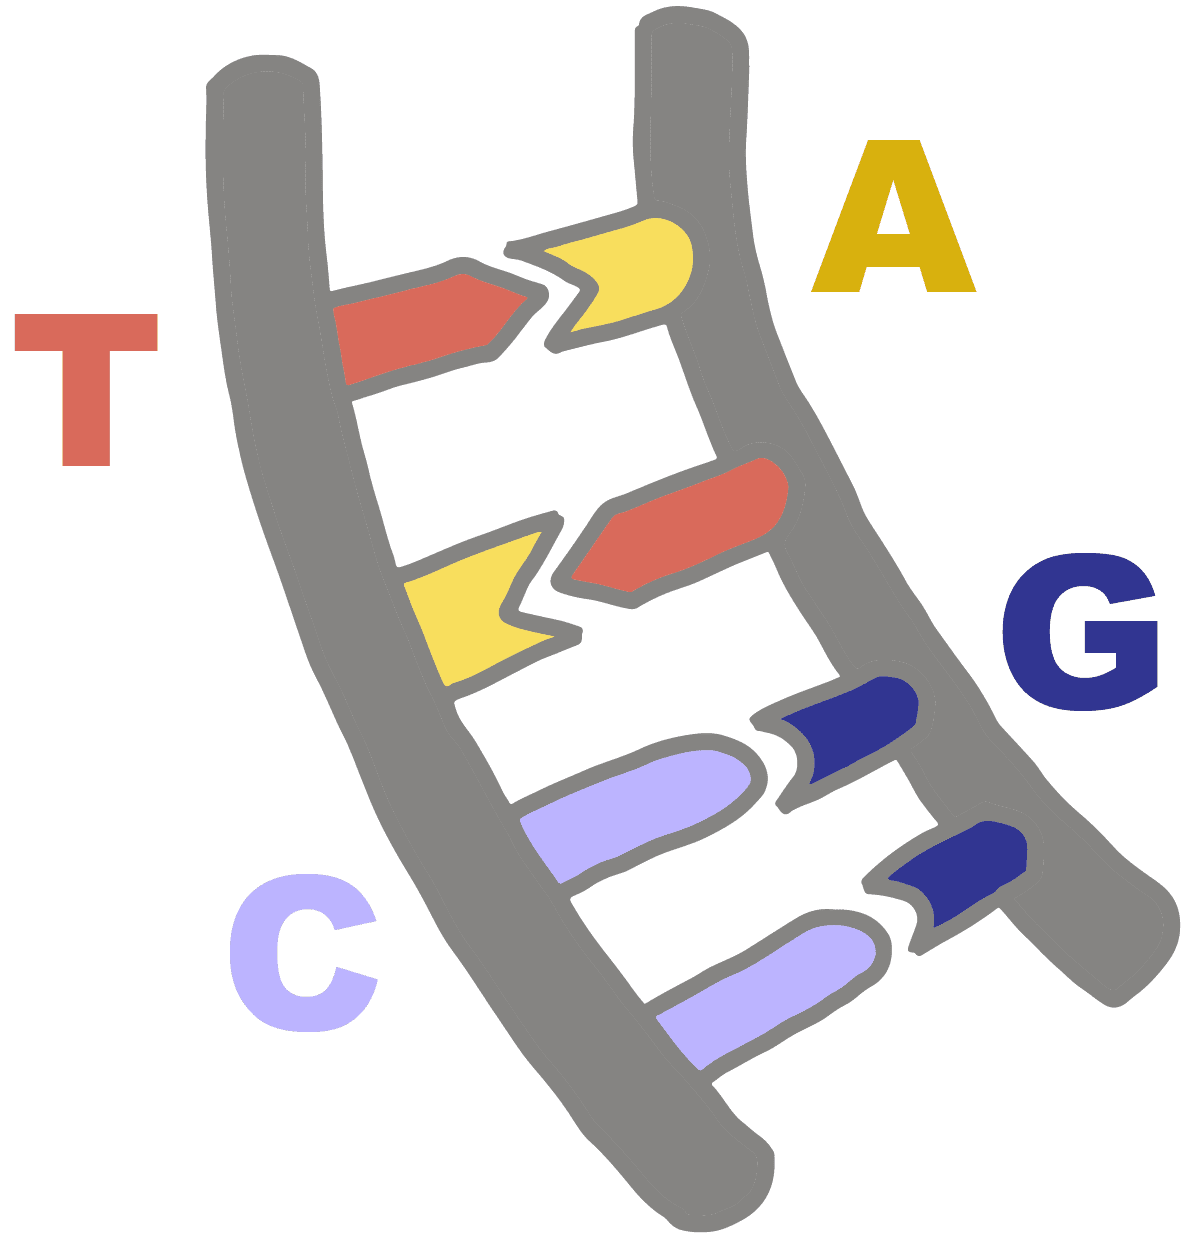 DNA 碱基与其互补碱基配对、腺嘌呤碱基与胸腺嘧啶配对以及鸟嘌呤碱基与胞嘧啶配对的图像